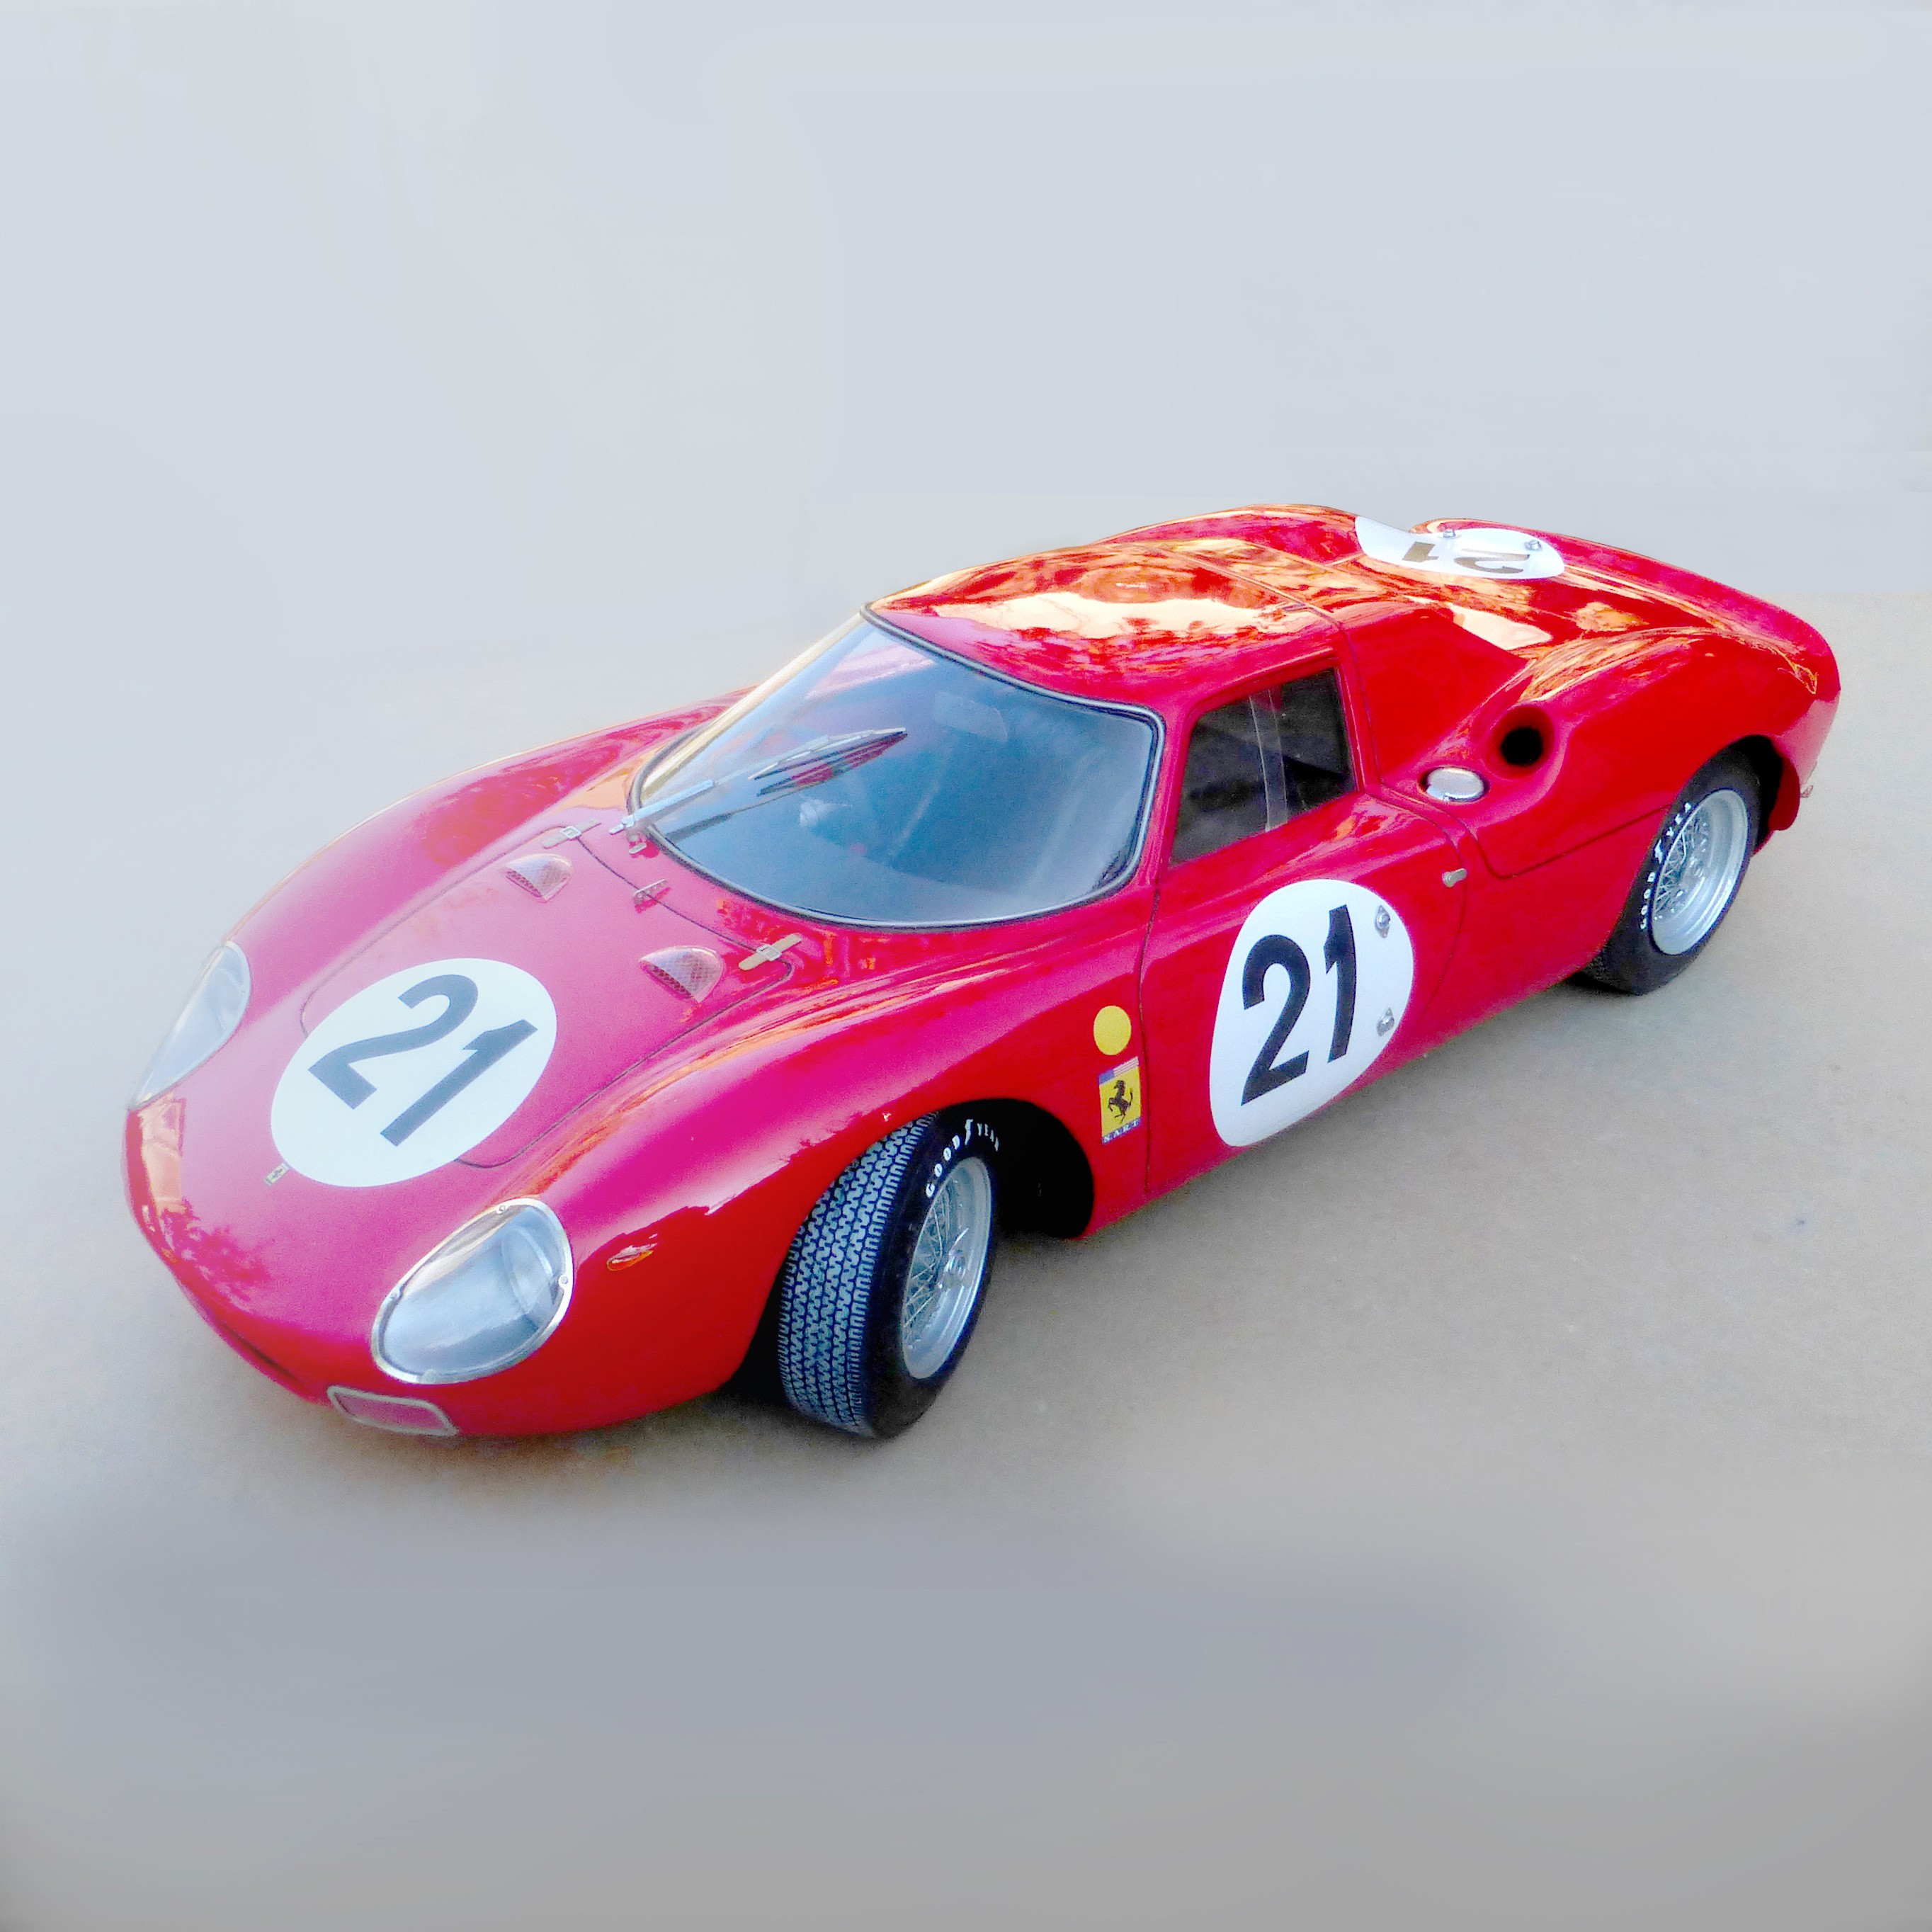 Zo snel als een flits Vrijwel experimenteel Ferrari 250 LM Le Mans 1965 n°21 in 1/12 scale in kit & handbuilt